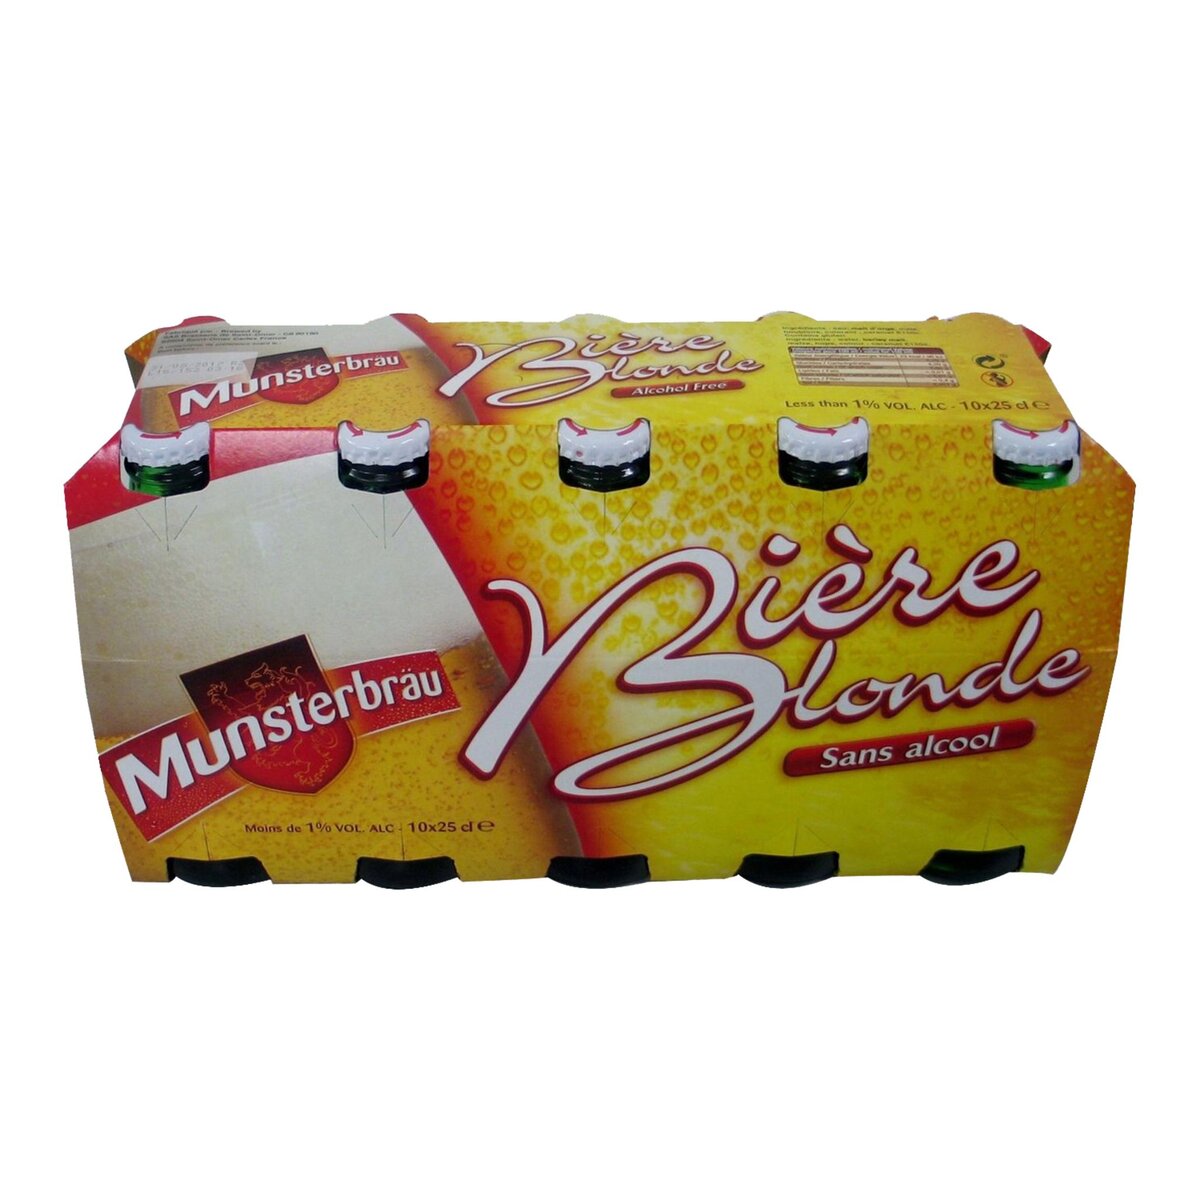 MUNSTERBRAU Munsterbrau Bière blonde sans alcool 0,8% bouteilles 10x25cl 10x25cl